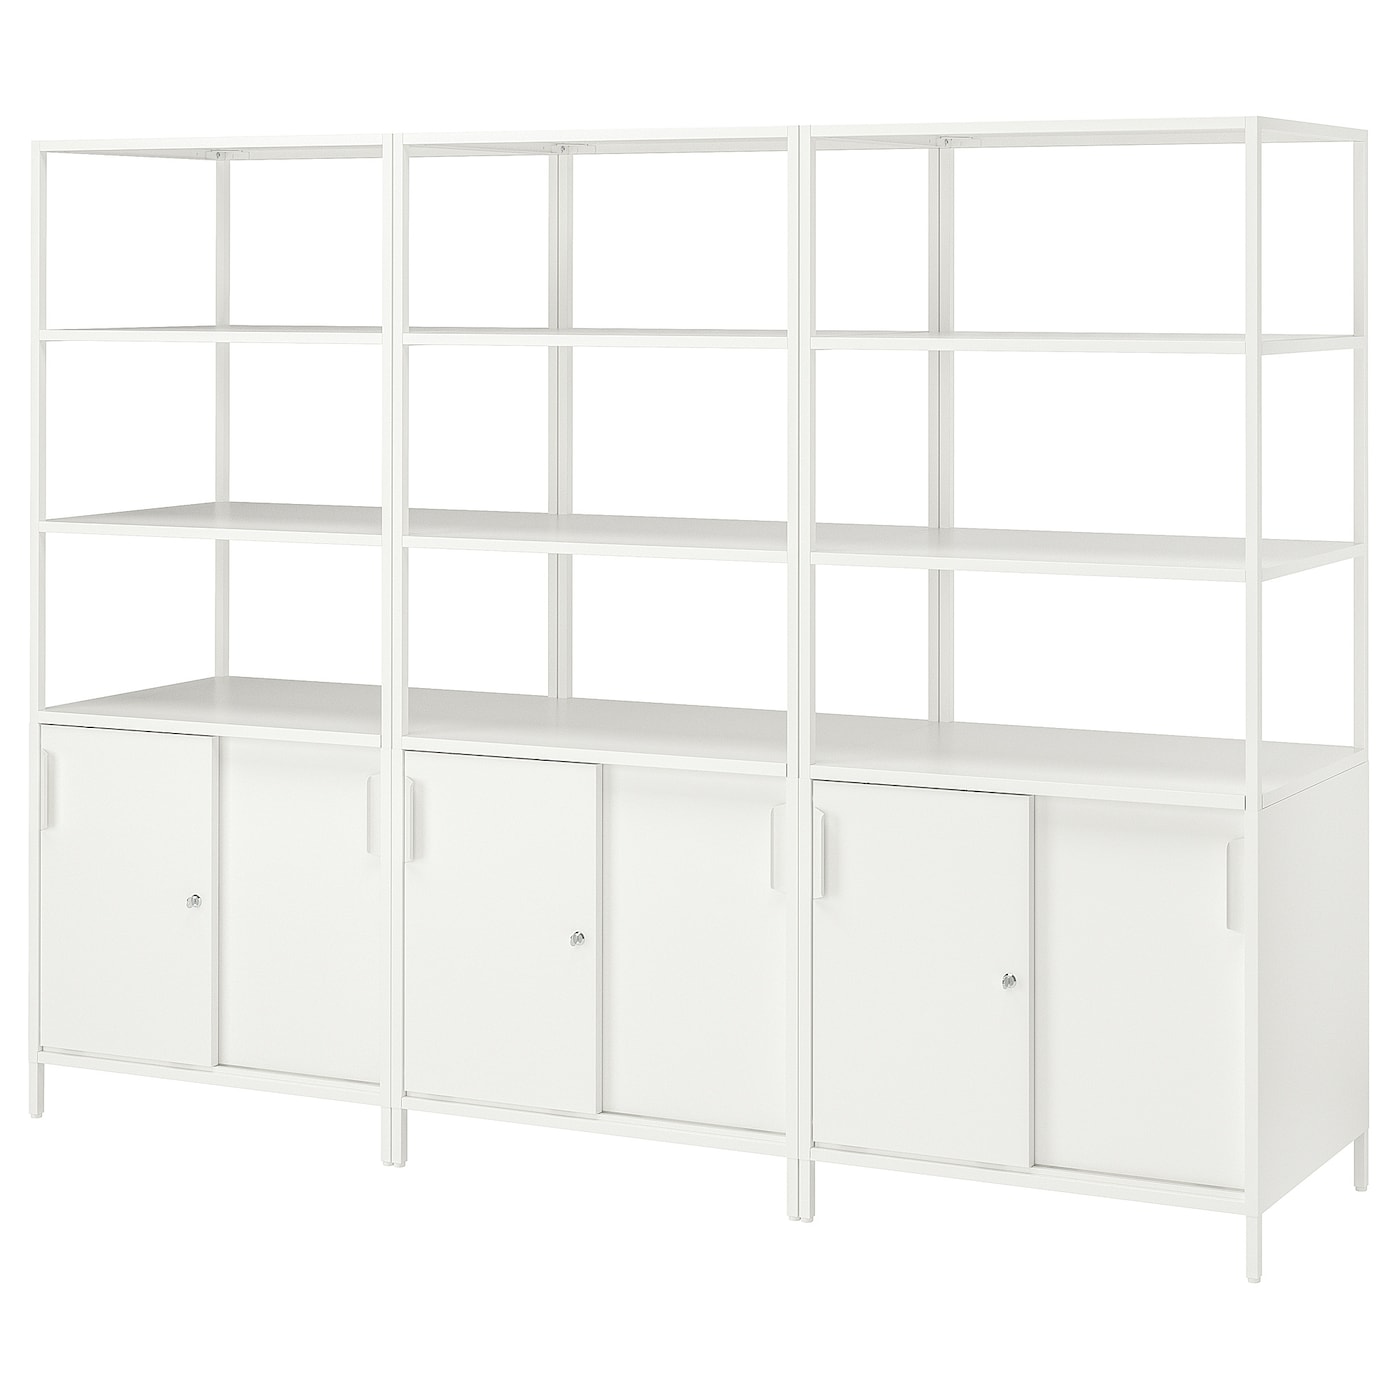 Шкаф - TROTTEN IKEA/ ТРОТТЕН ИКЕА,  240х180 см, белый